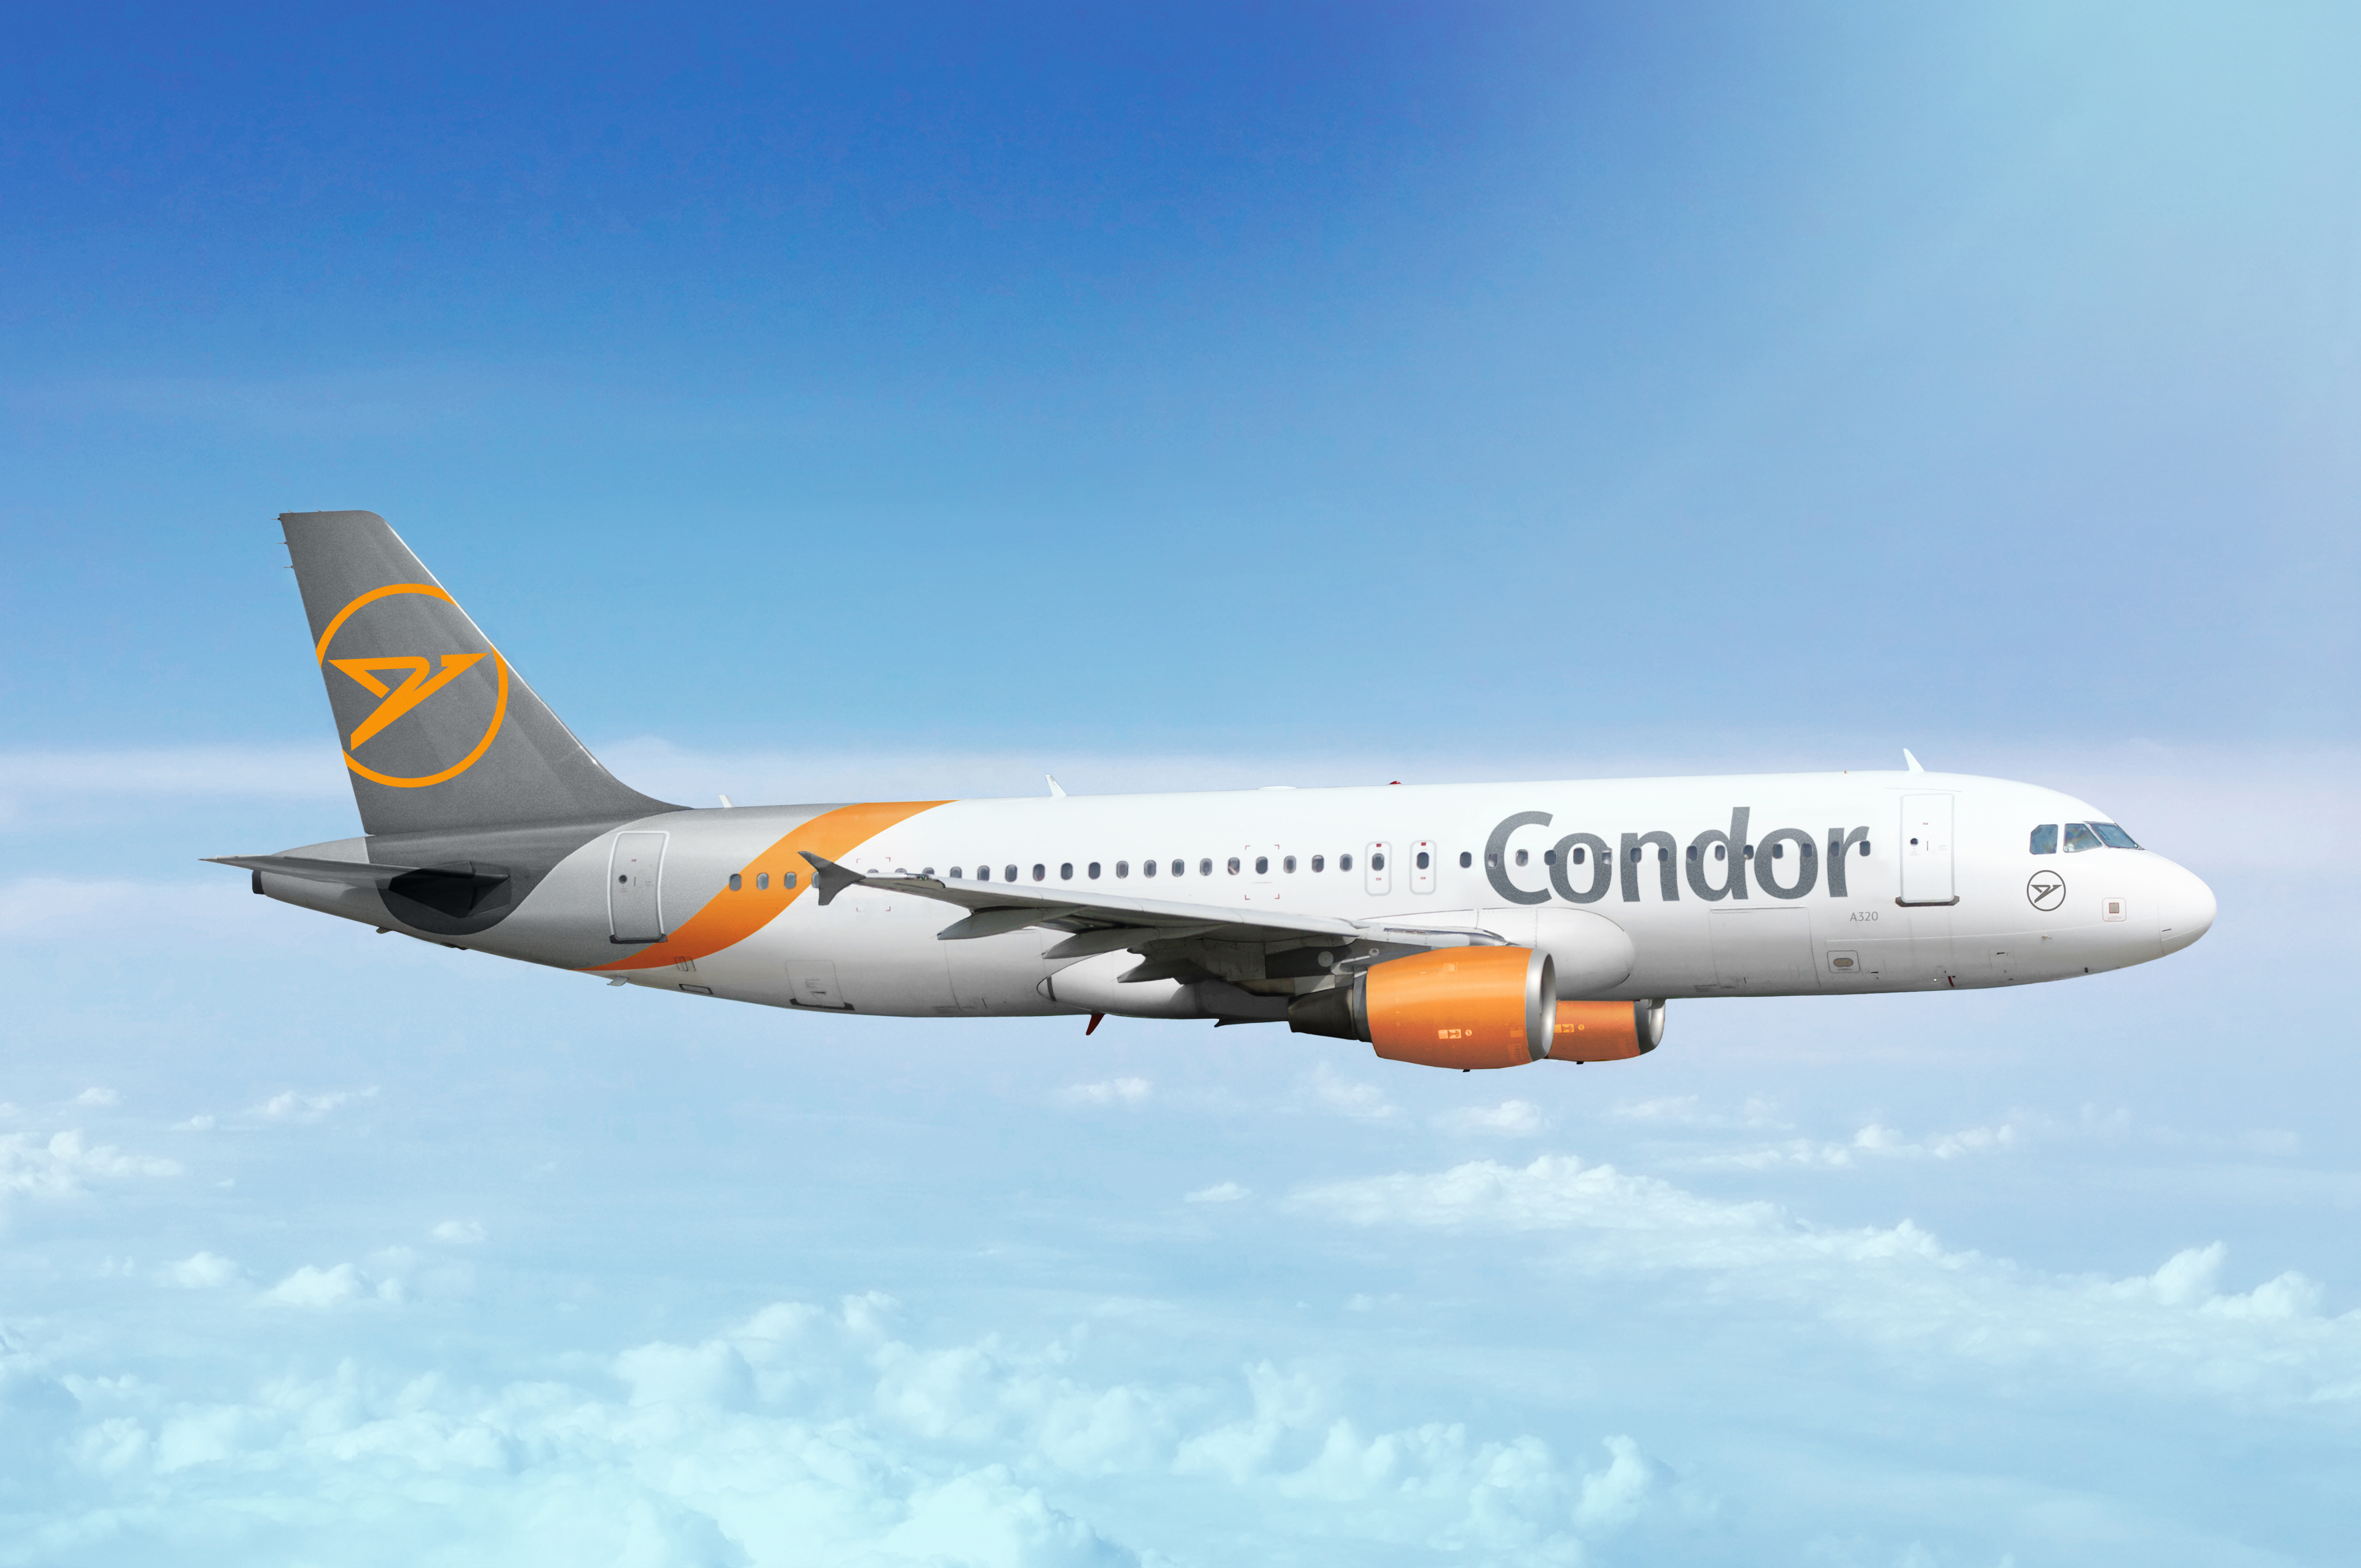 Condor wird von LOT Polish Airlines aufgekauft